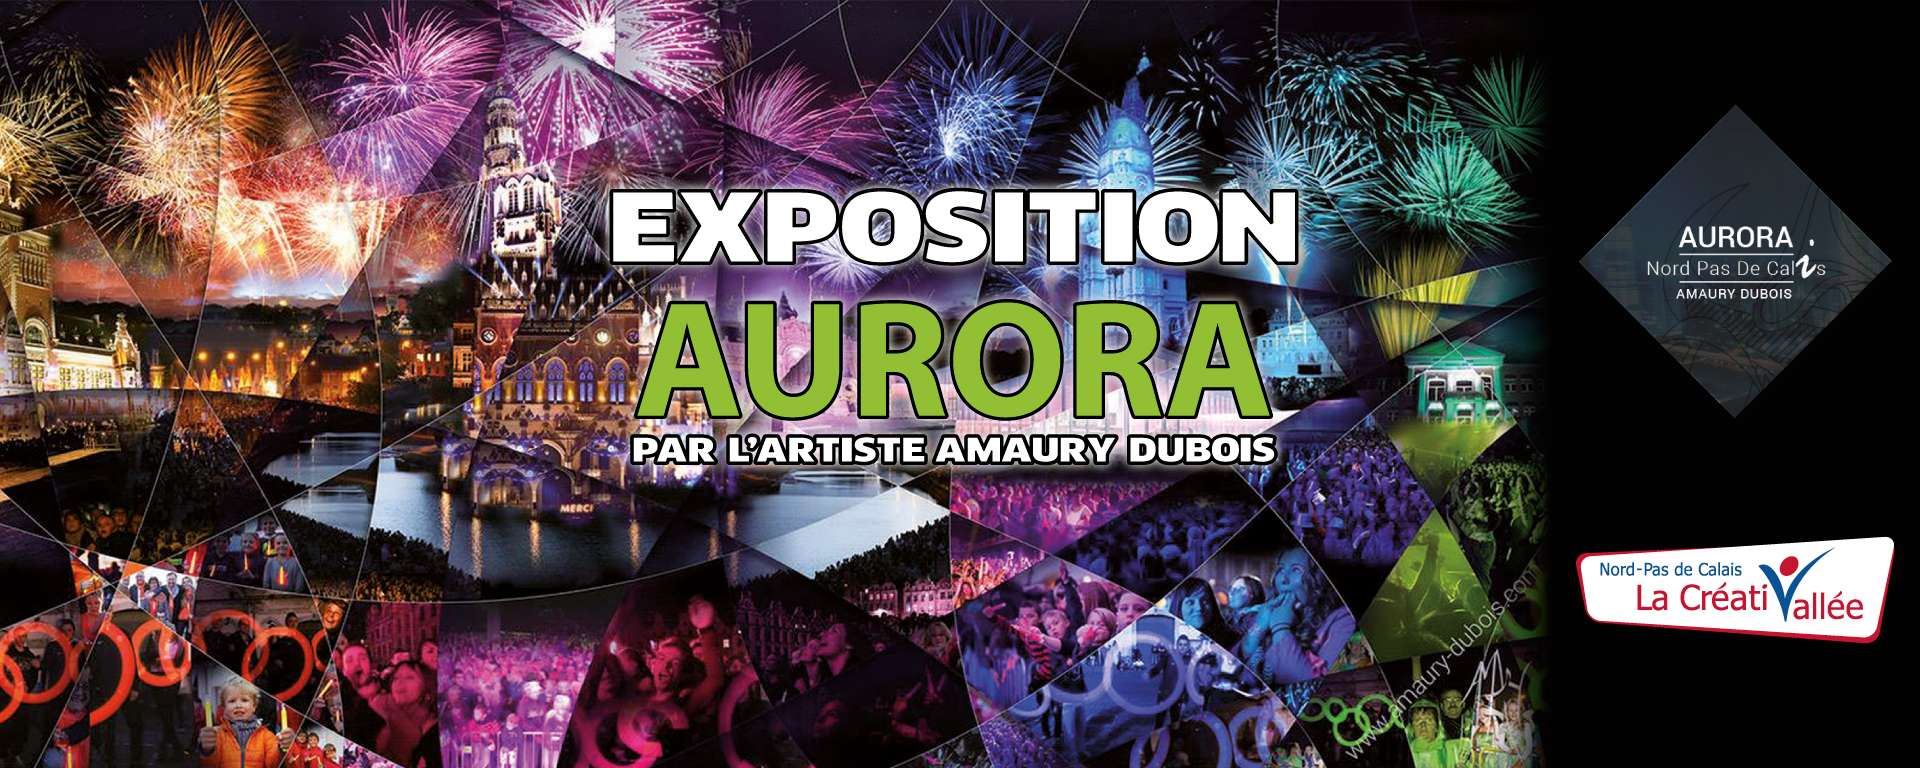 Vernissage de l'expostion Aurora